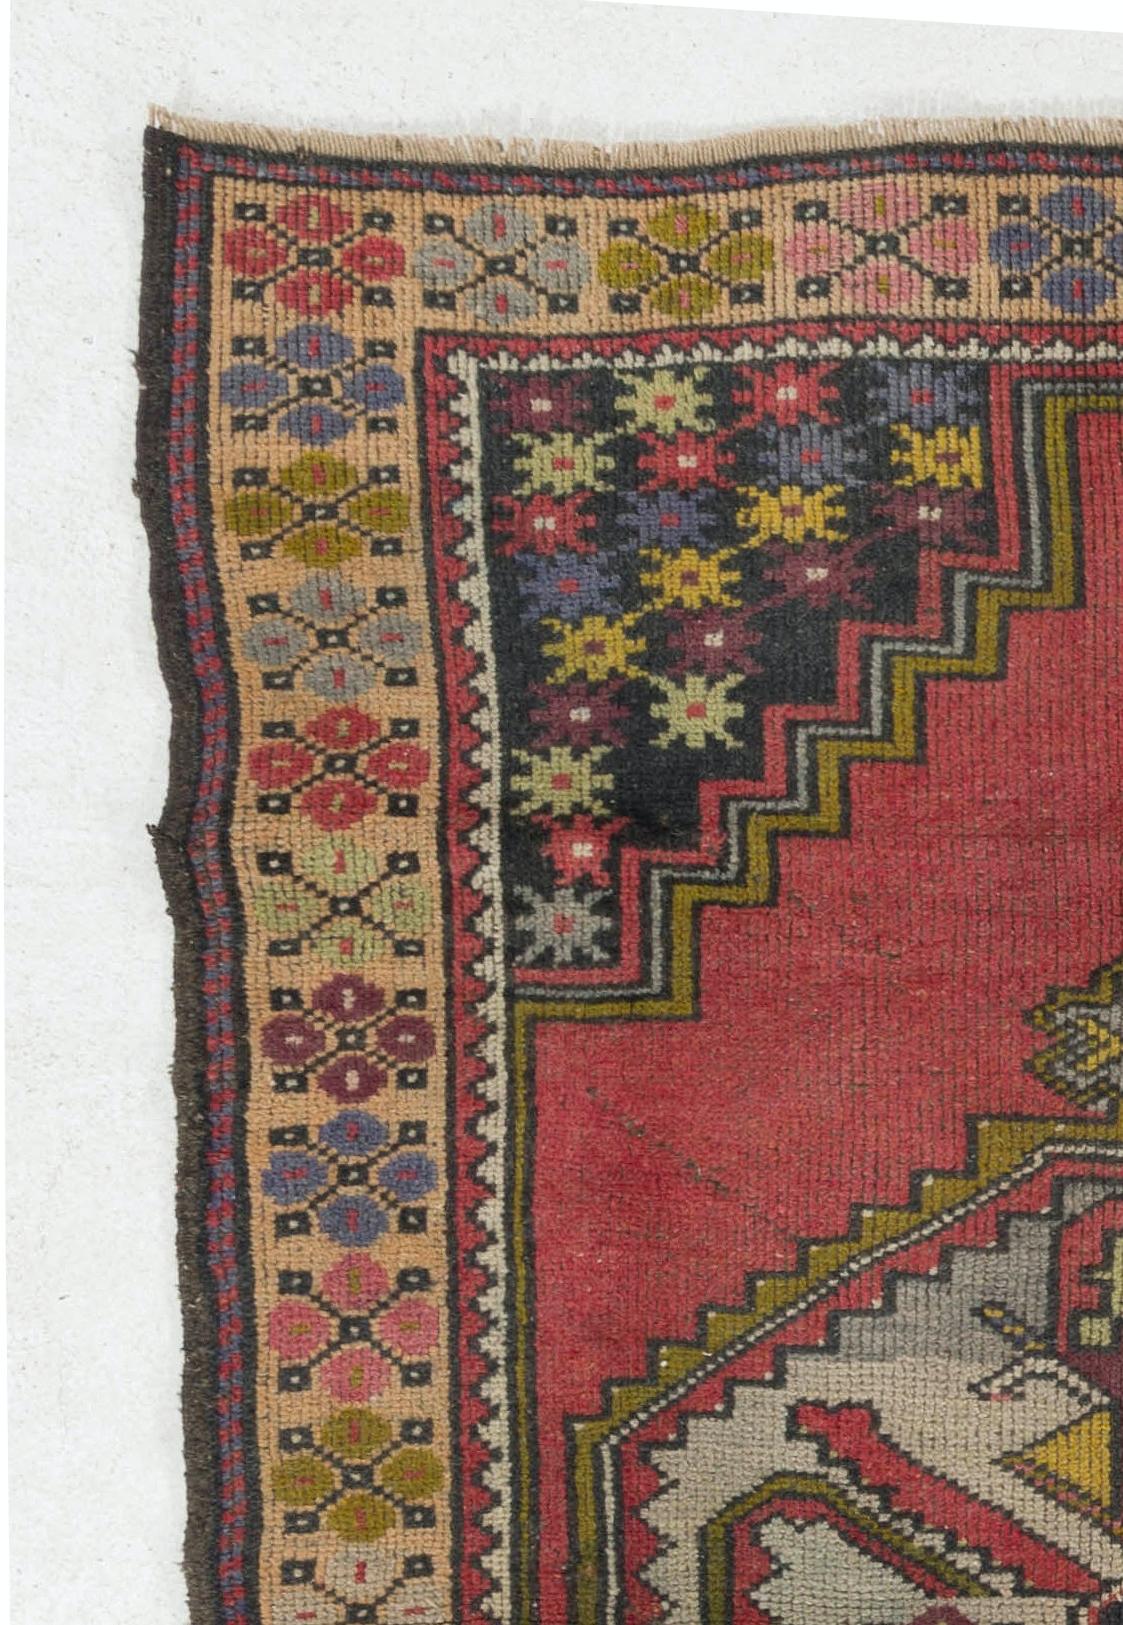 Tapis turc vintage des années 1950 finement noué à la main, présentant un motif géométrique bien dessiné avec un médaillon en son centre. Le tapis est fait de poils de laine moyens sur une base de laine. Il est lourd et repose à plat sur le sol, en